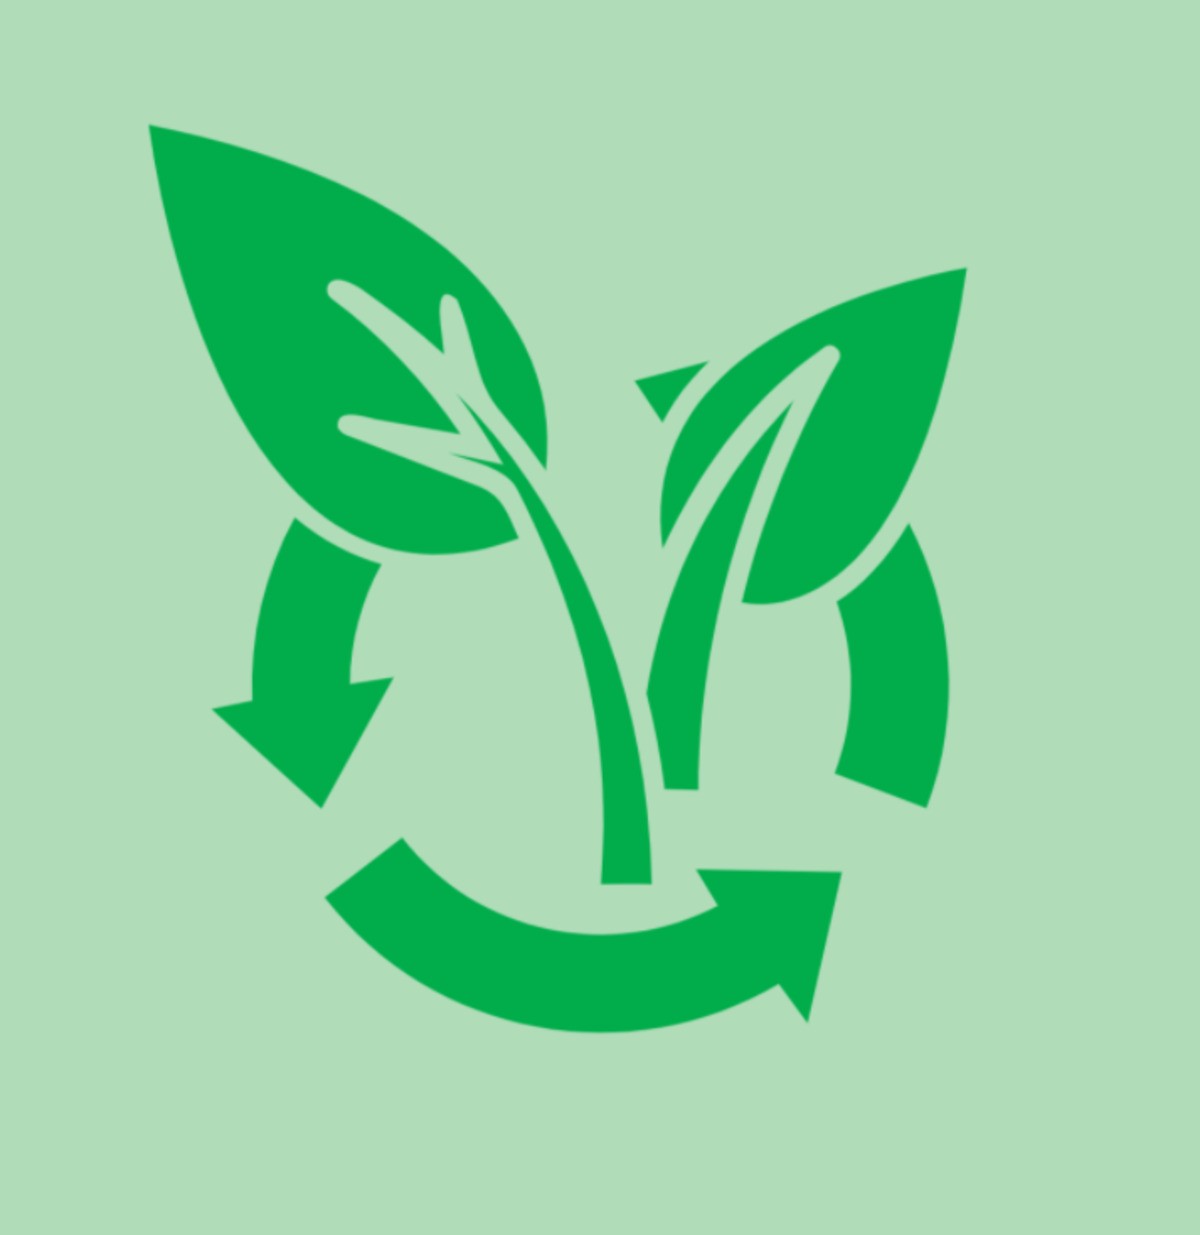 Un nouveau webinaire sur les biodéchets et les litières végétales, le 29 octobre 2021 à 11h